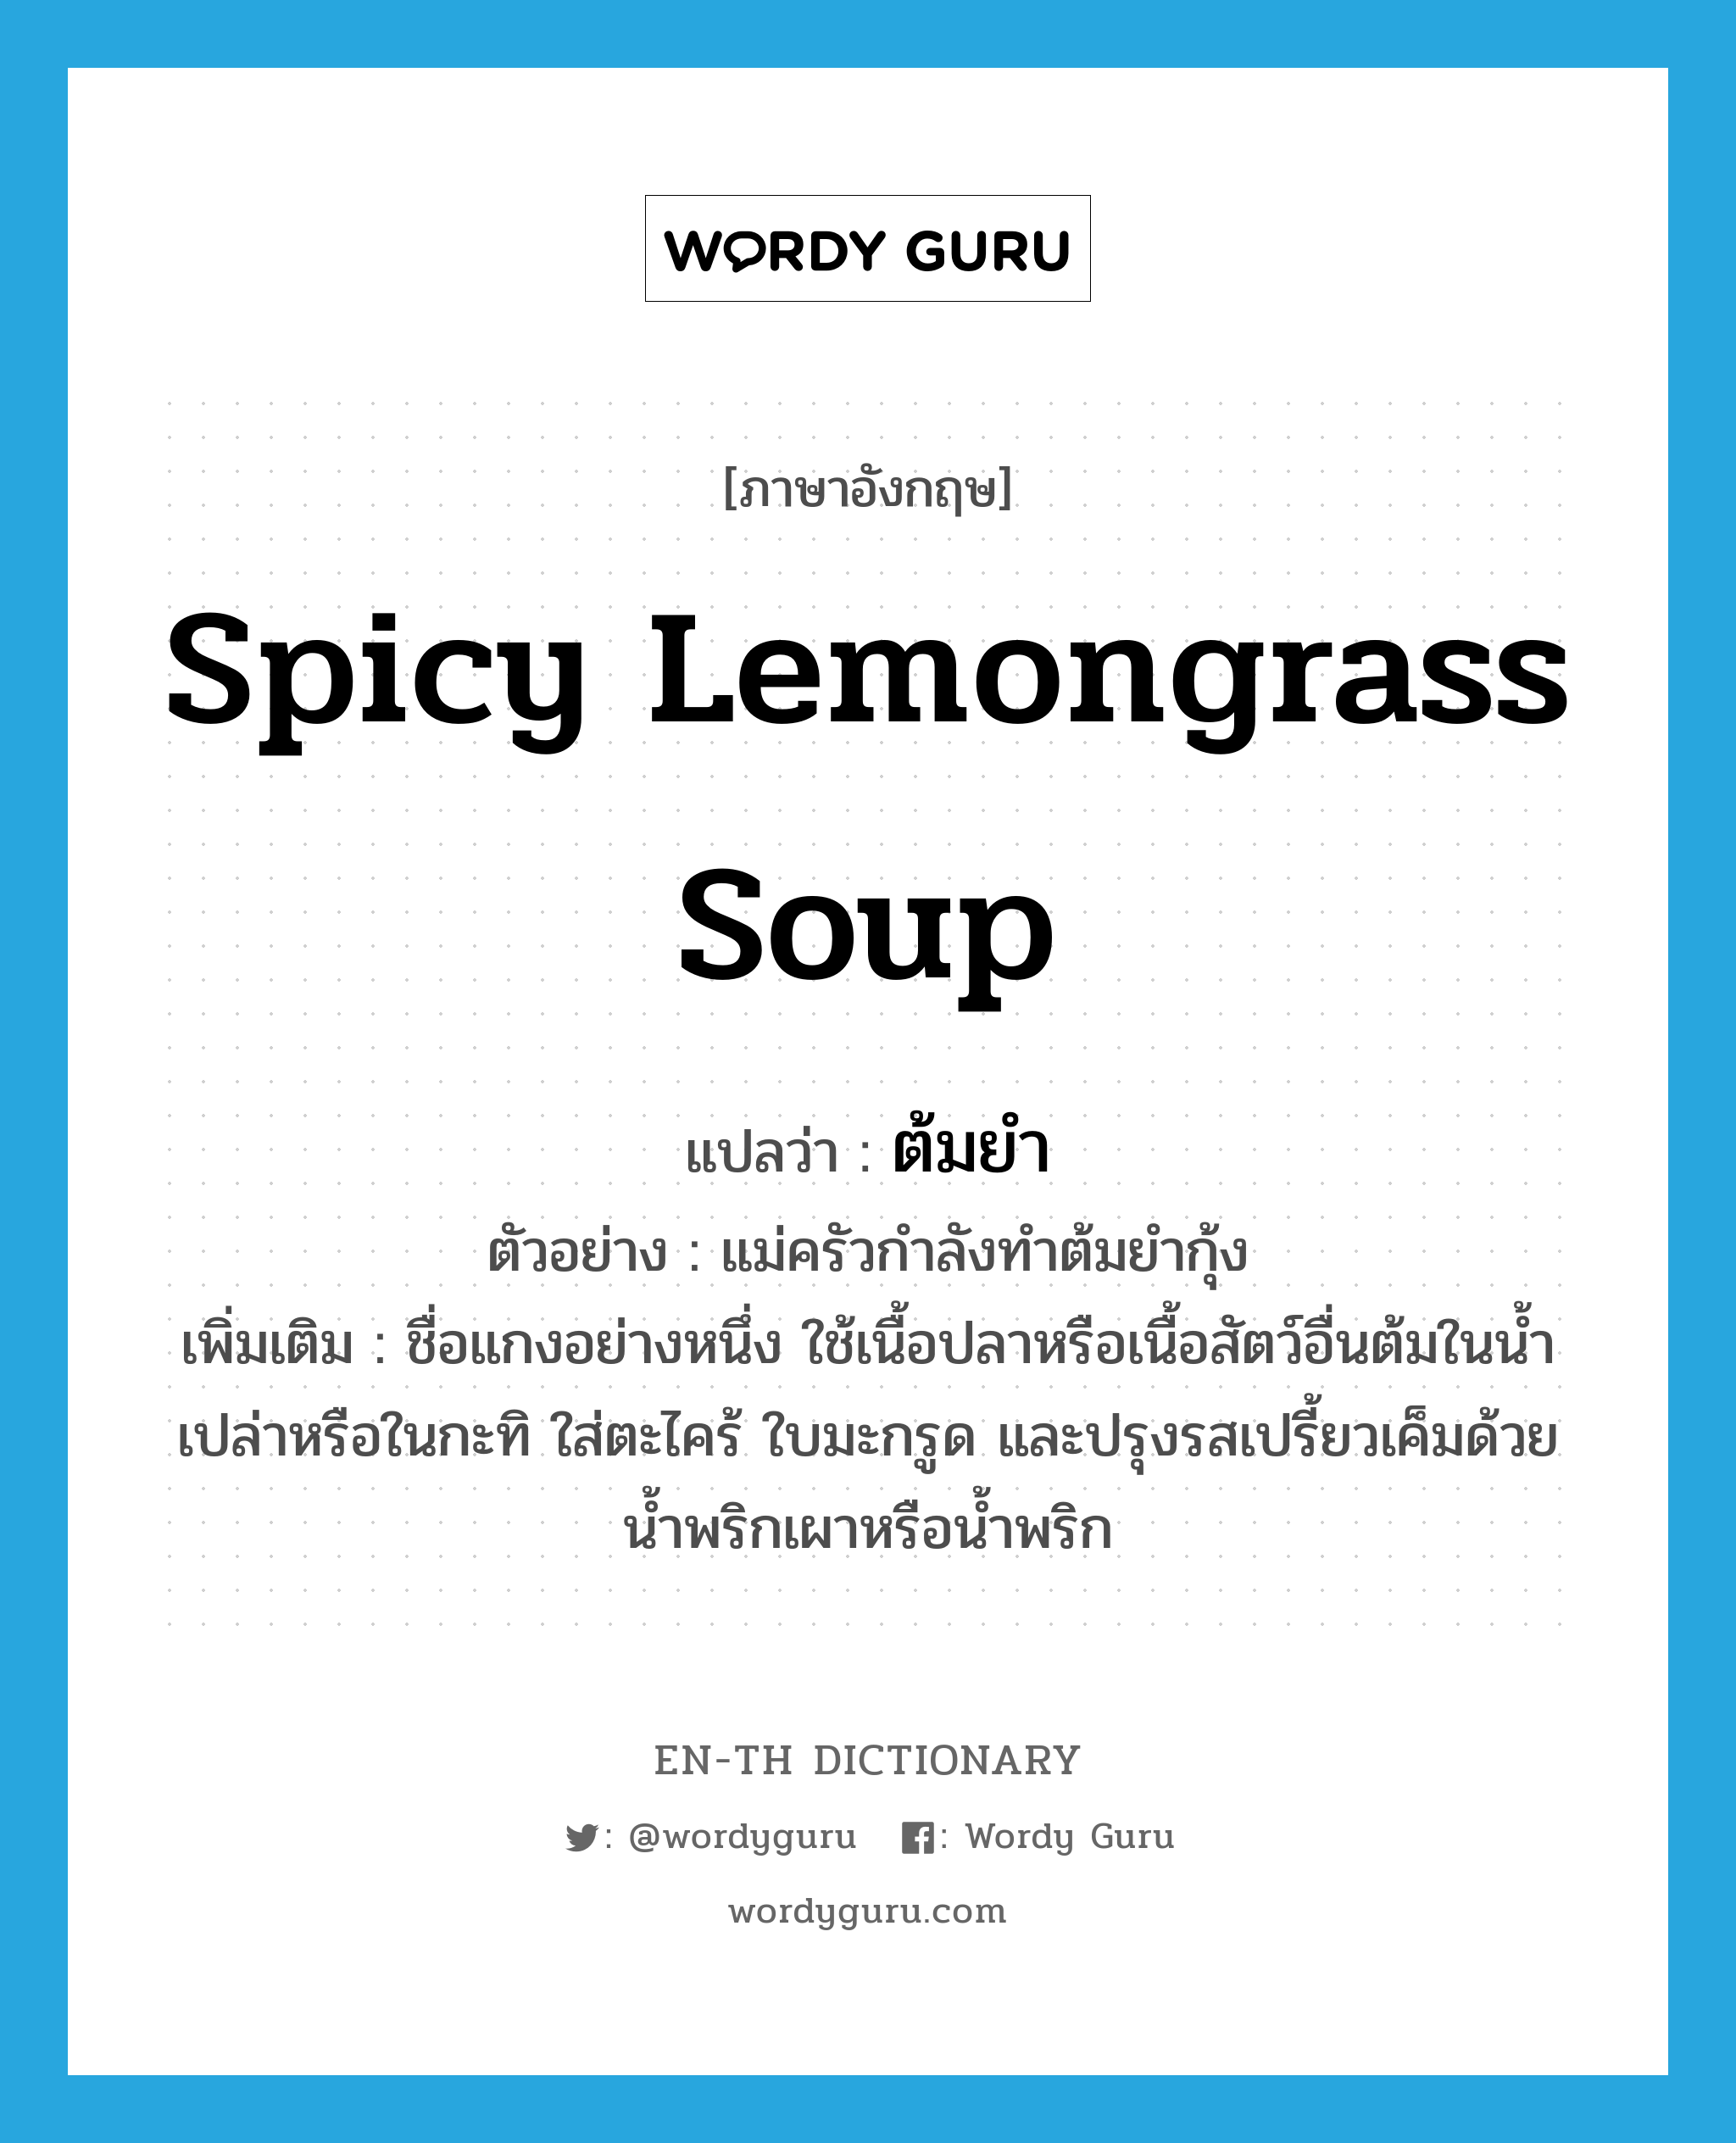 ต้มยำ ภาษาอังกฤษ?, คำศัพท์ภาษาอังกฤษ ต้มยำ แปลว่า spicy lemongrass soup ประเภท N ตัวอย่าง แม่ครัวกำลังทำต้มยำกุ้ง เพิ่มเติม ชื่อแกงอย่างหนึ่ง ใช้เนื้อปลาหรือเนื้อสัตว์อื่นต้มในน้ำเปล่าหรือในกะทิ ใส่ตะไคร้ ใบมะกรูด และปรุงรสเปรี้ยวเค็มด้วยน้ำพริกเผาหรือน้ำพริก หมวด N